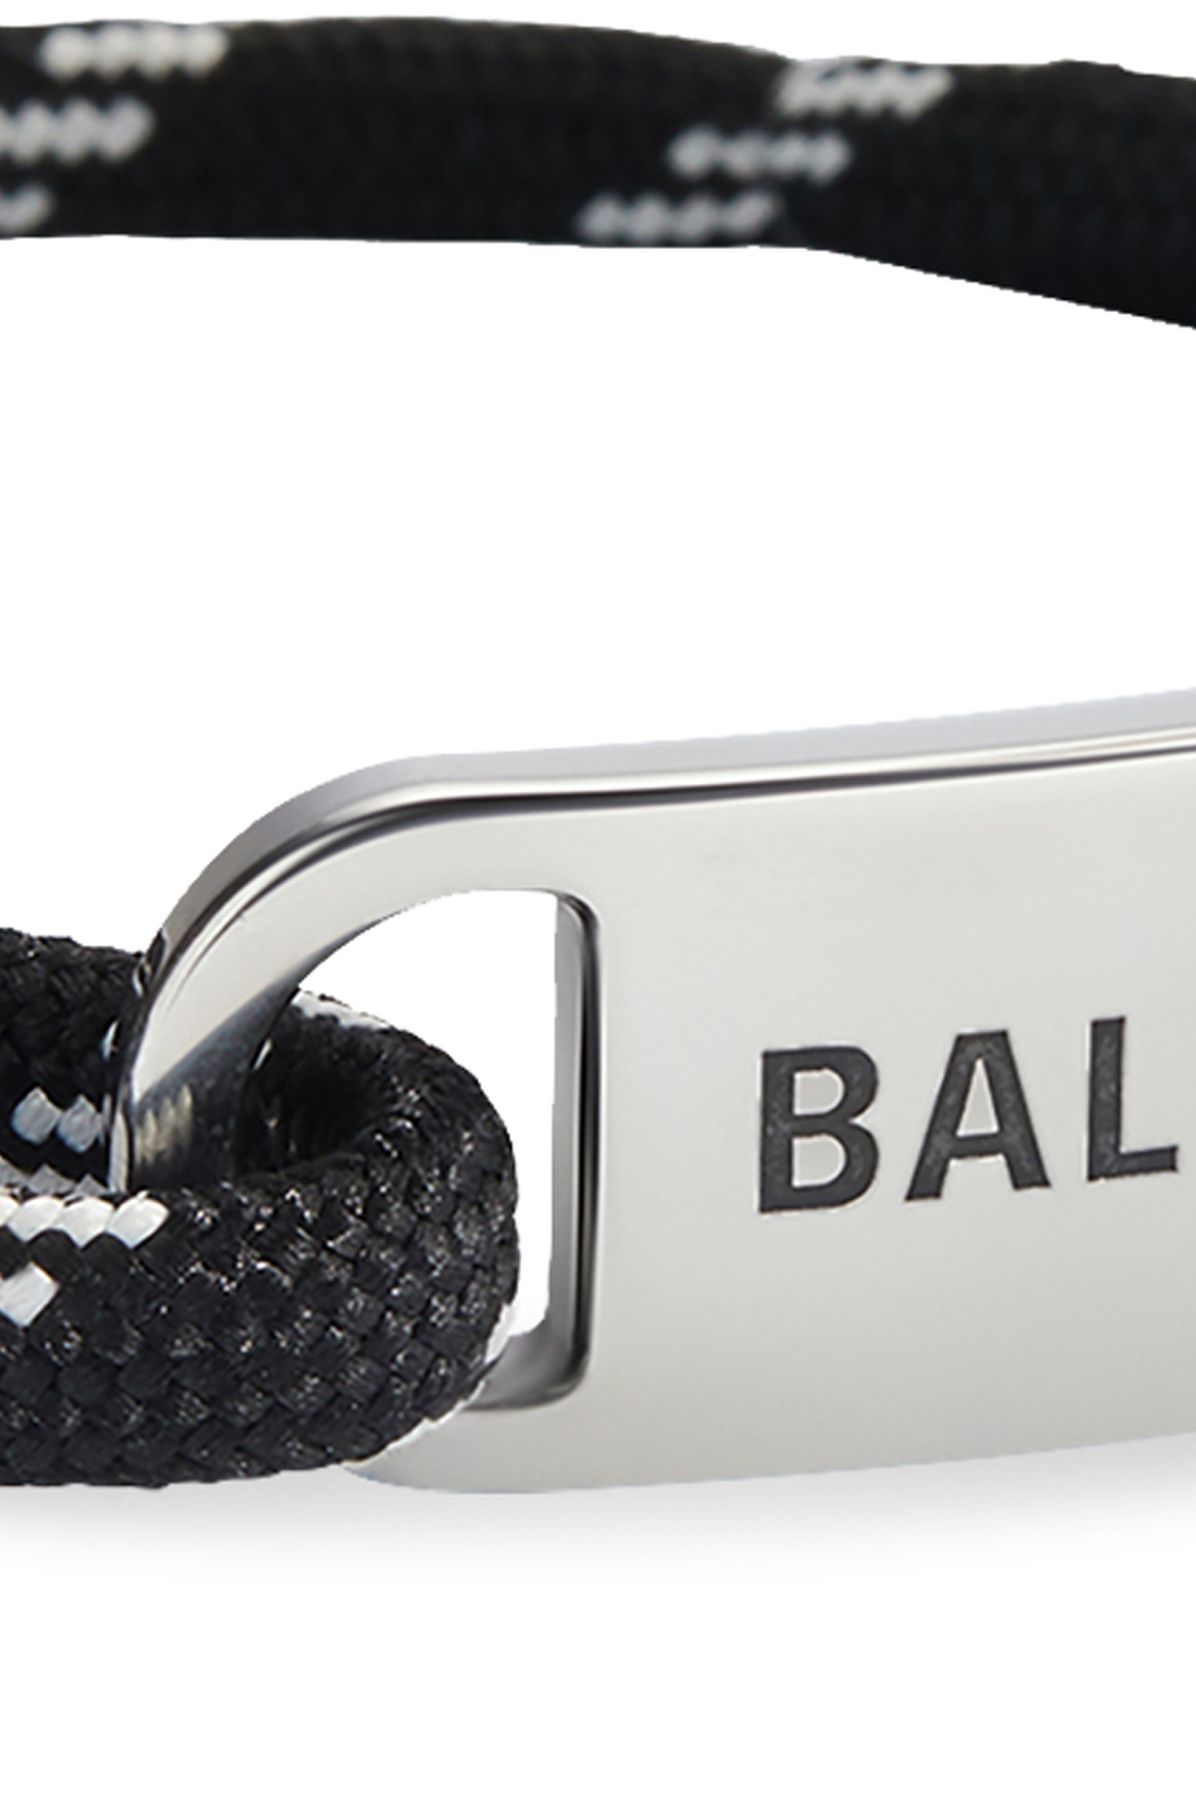 Balenciaga Cord bracelet